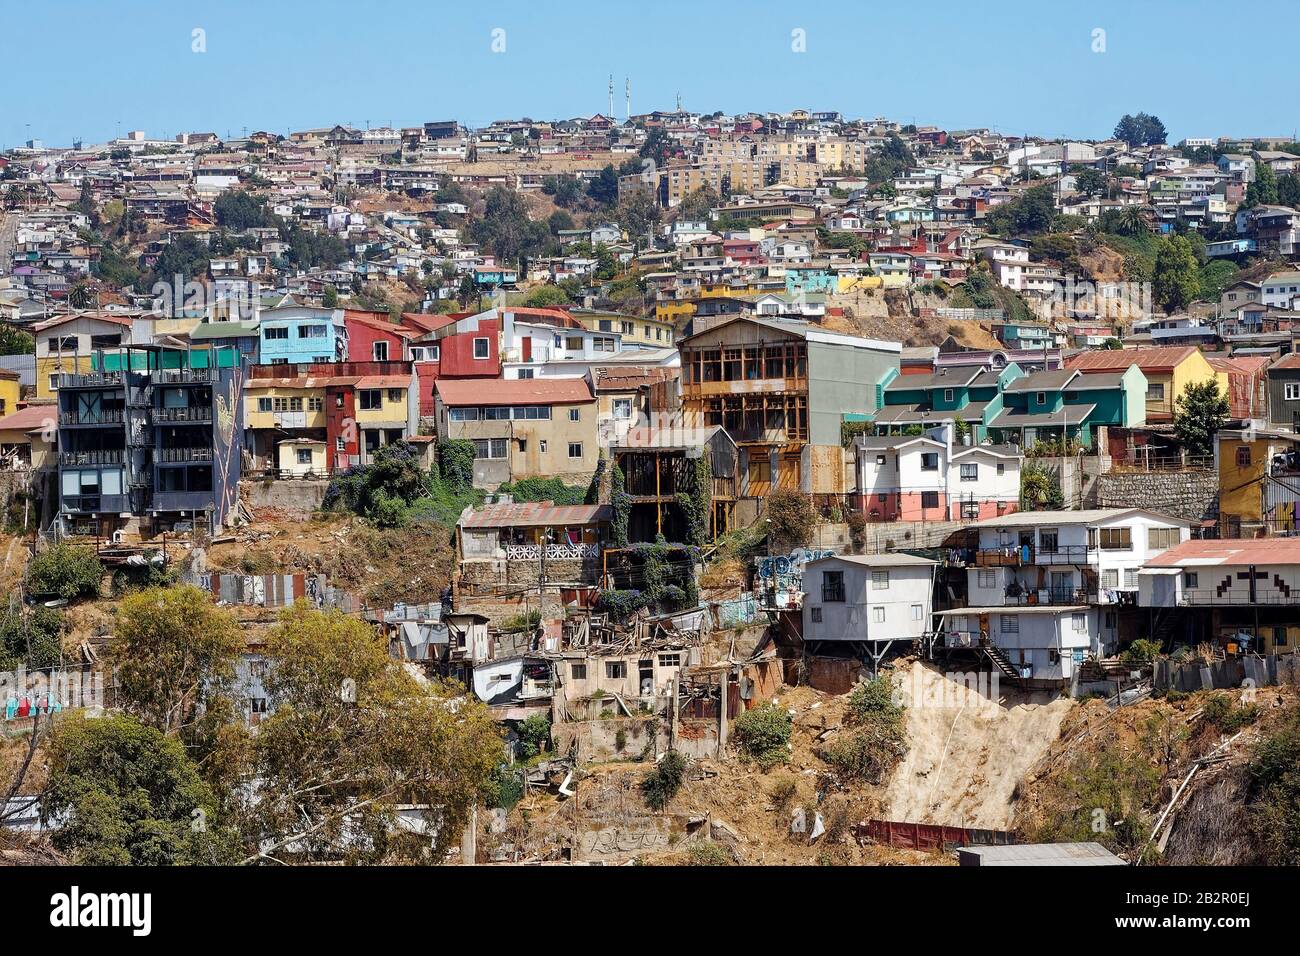 Stadtbild, Hanggebäude, dicht beieinander, einige in Ruinen, viele Farben, Valparaiso; Chile; Südamerika; Sommer Stockfoto